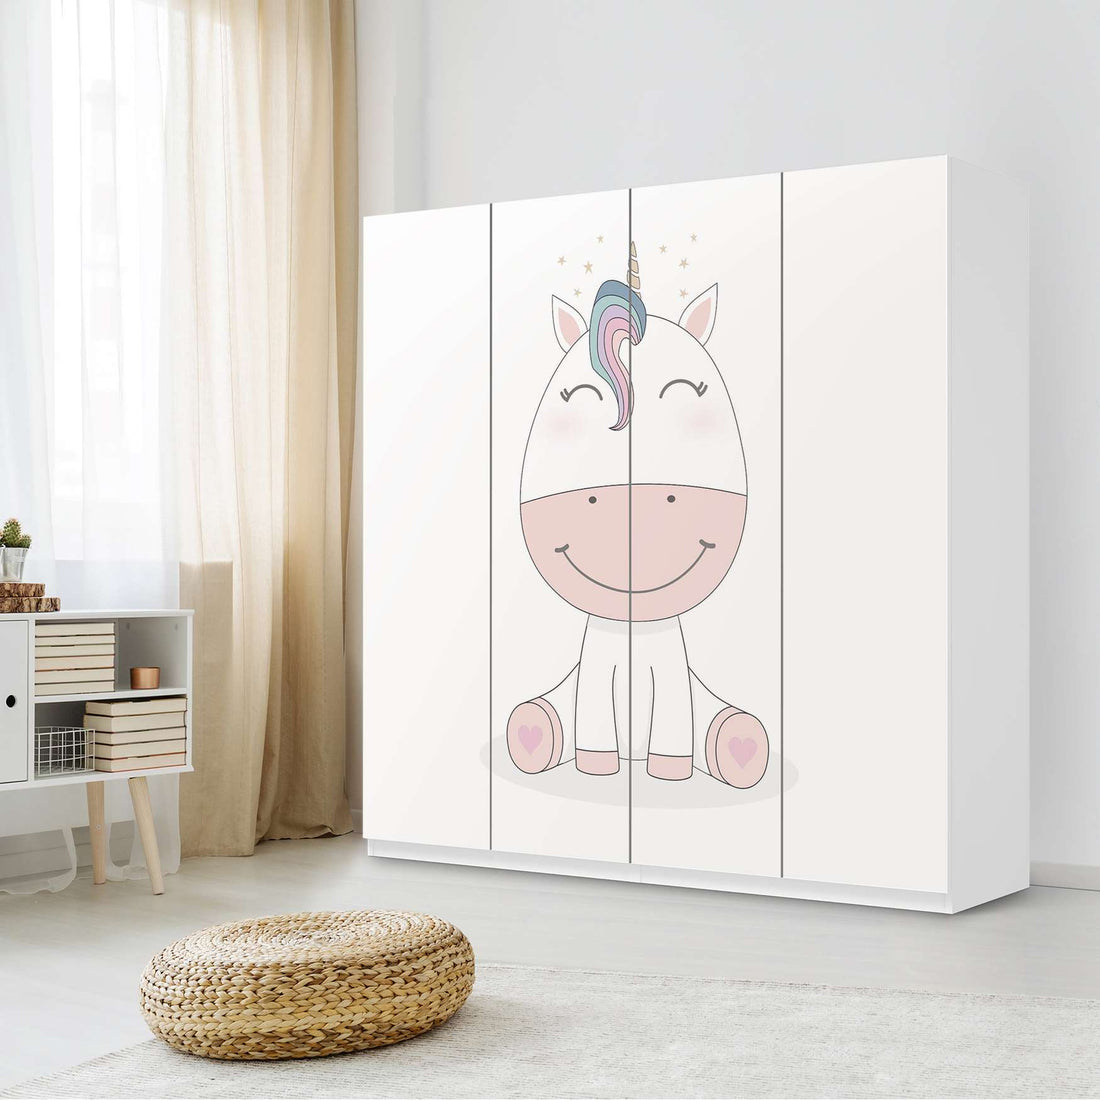 Klebefolie für Schränke Baby Unicorn - IKEA Pax Schrank 201 cm Höhe - 4 Türen - Kinderzimmer